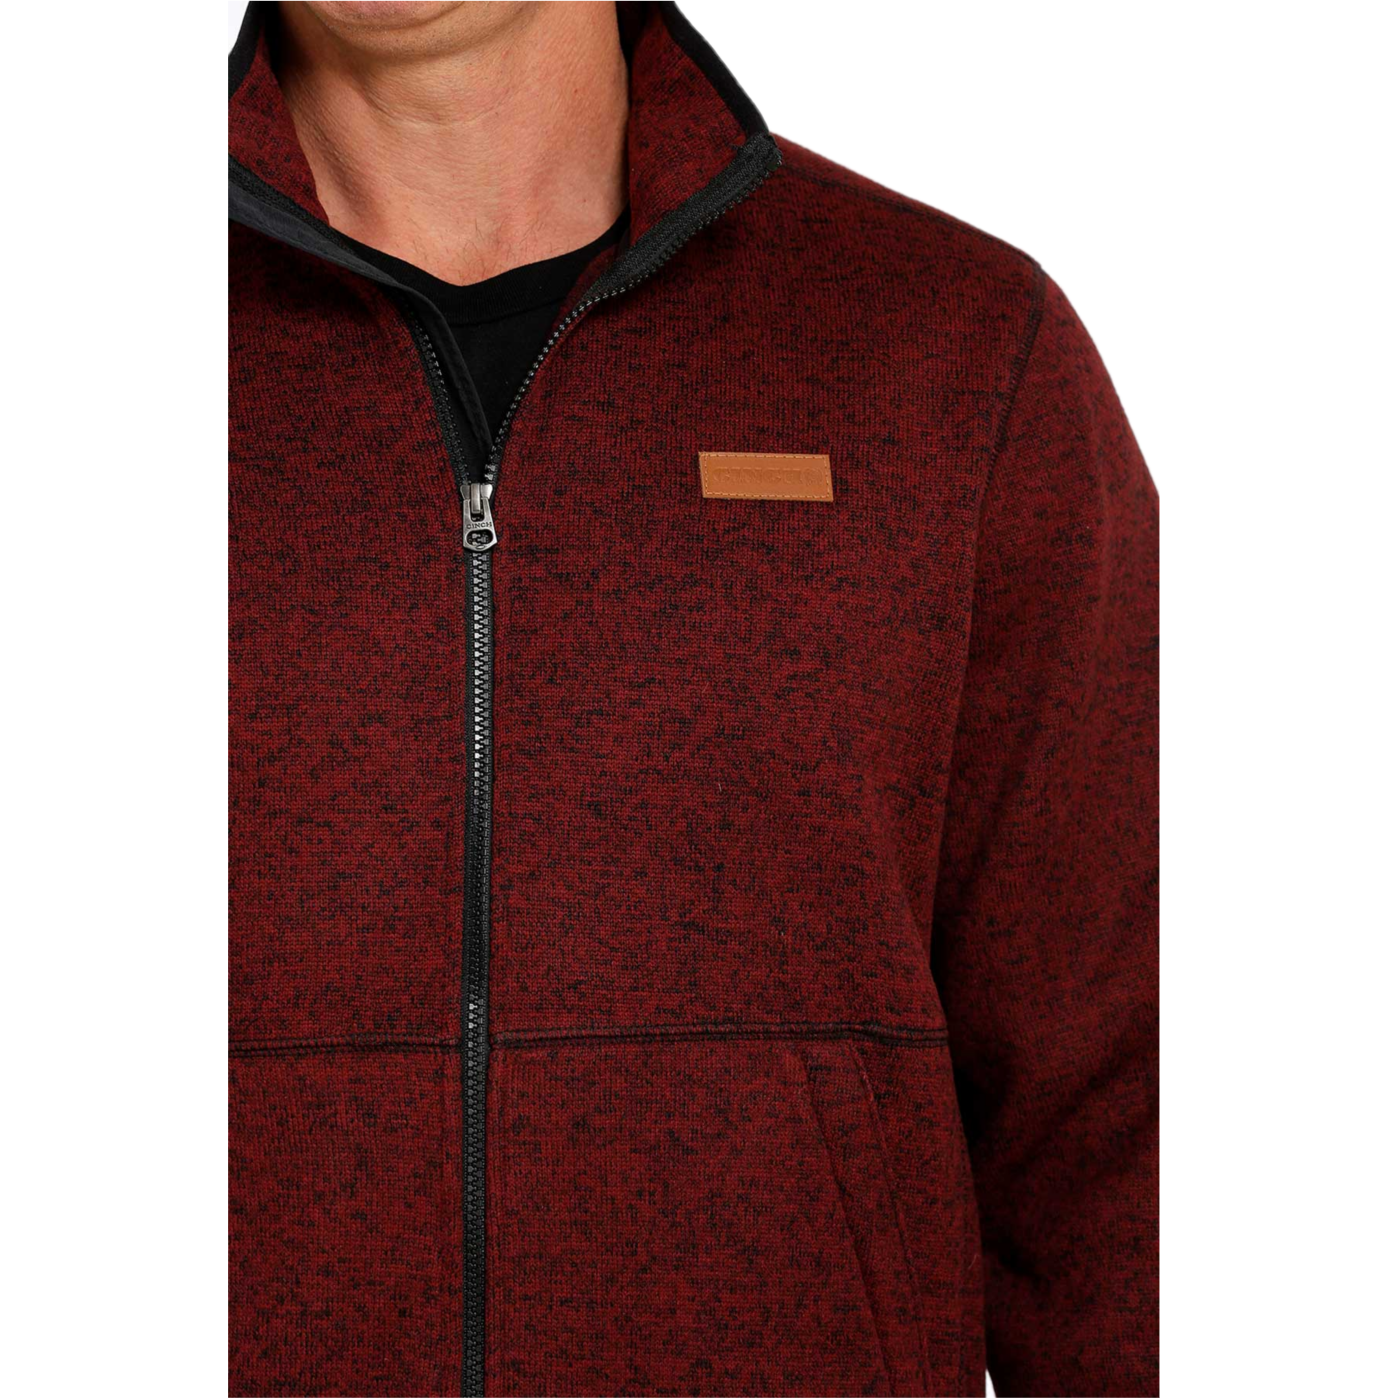 Cinch® Men's Knitted Burgundy Sweater Fleece Jacket MWJ1584001